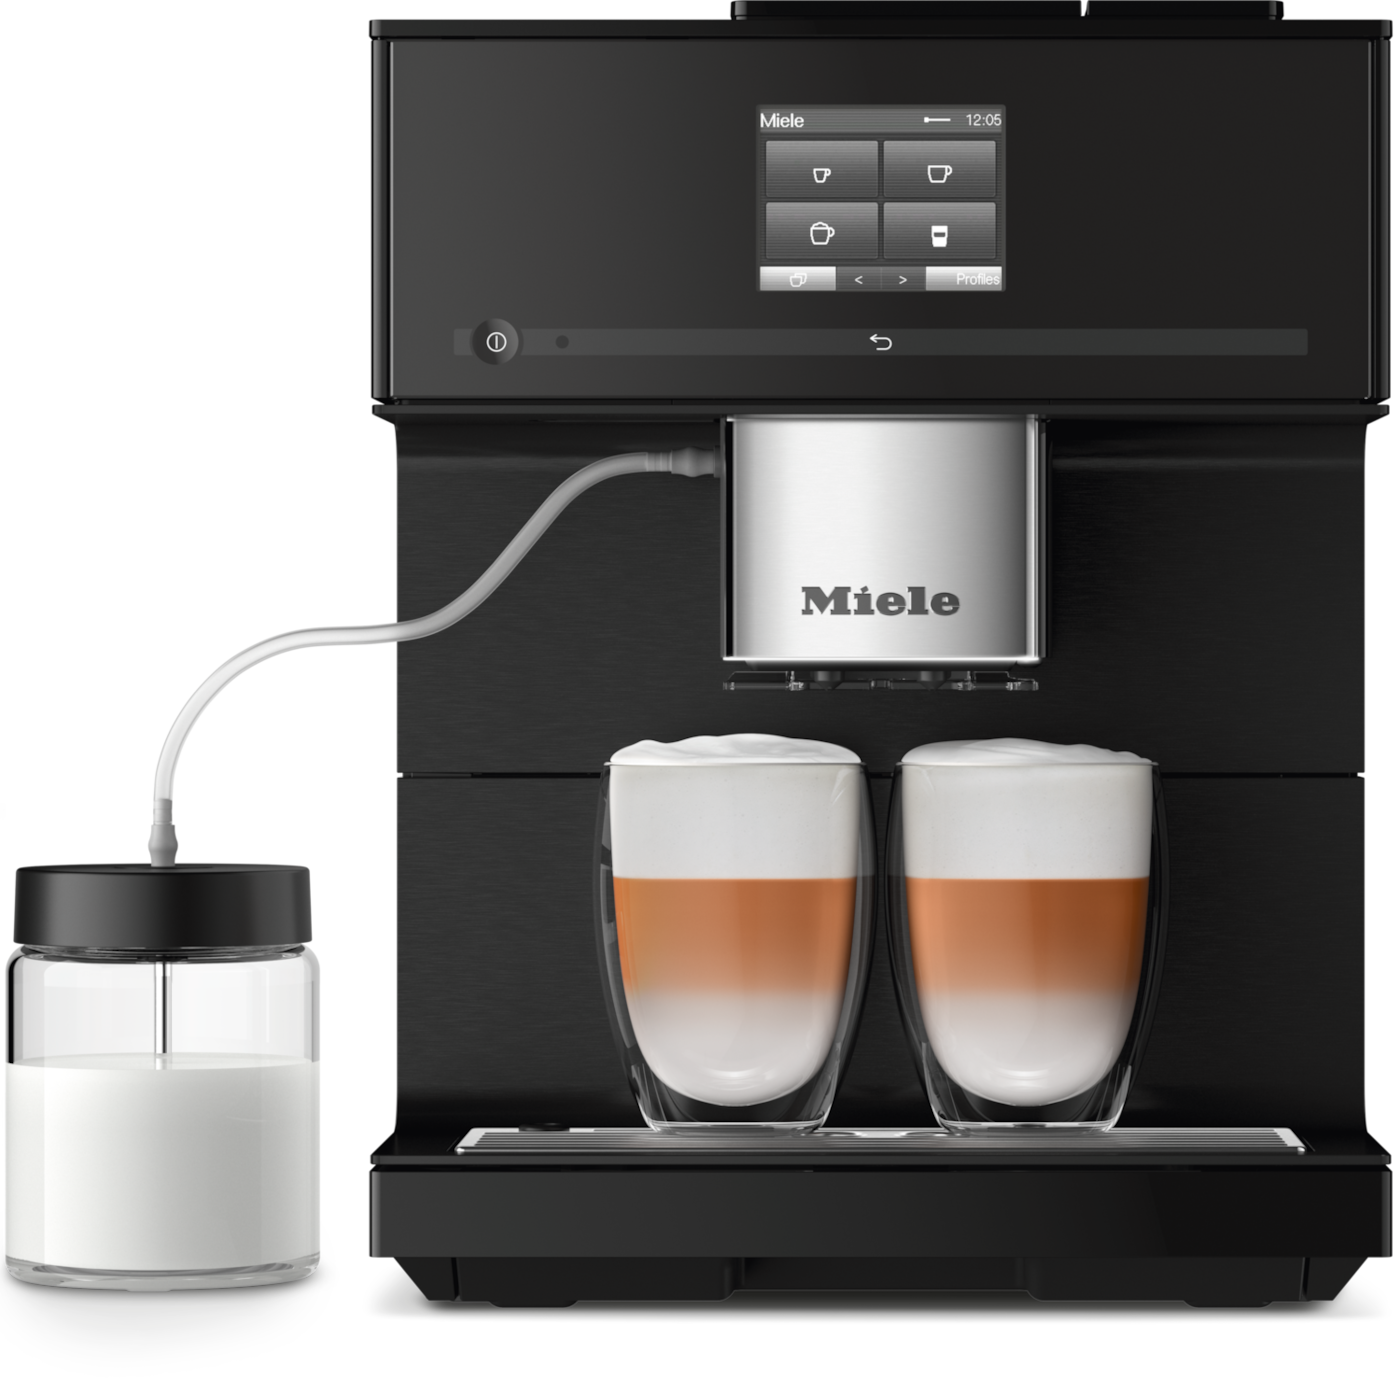 CM 7750 CoffeeSelect kohvimasin 3 kohvioa anumaga ja AutoDescale funktsiooniga product photo